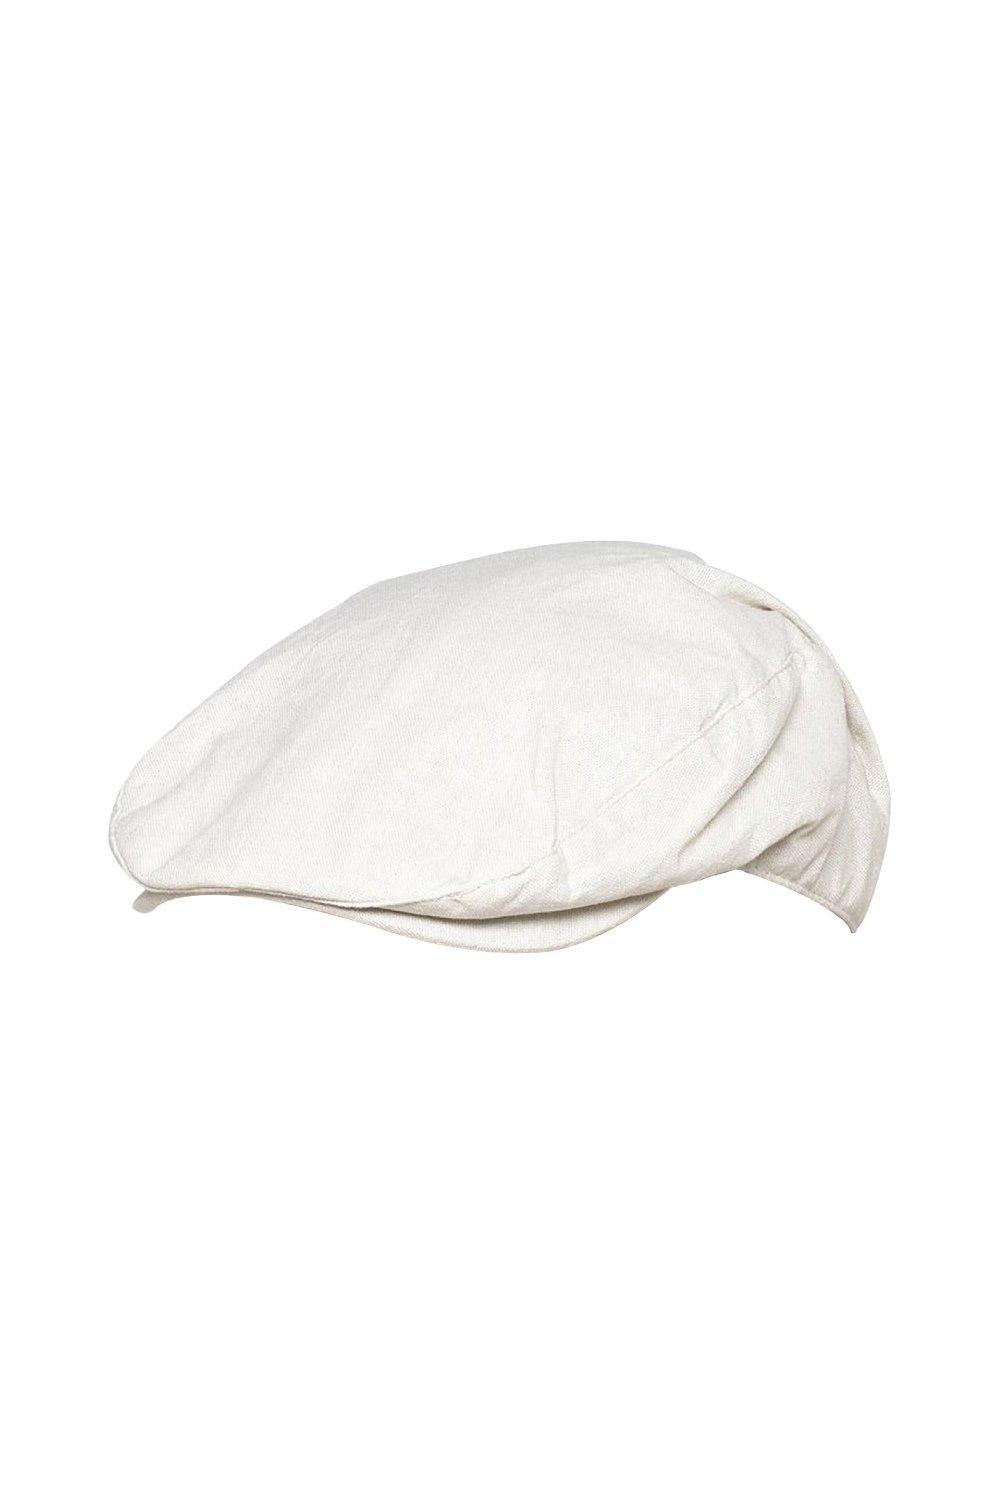 Дышащая льняная плоская шапка на лето Sock Snob, белый женская кепка 2022 модная дизайнерская бейсболка женские кепки кепки летние кепки для женщин снэпбэк кепка пляжная шляпа шляпы от солнца